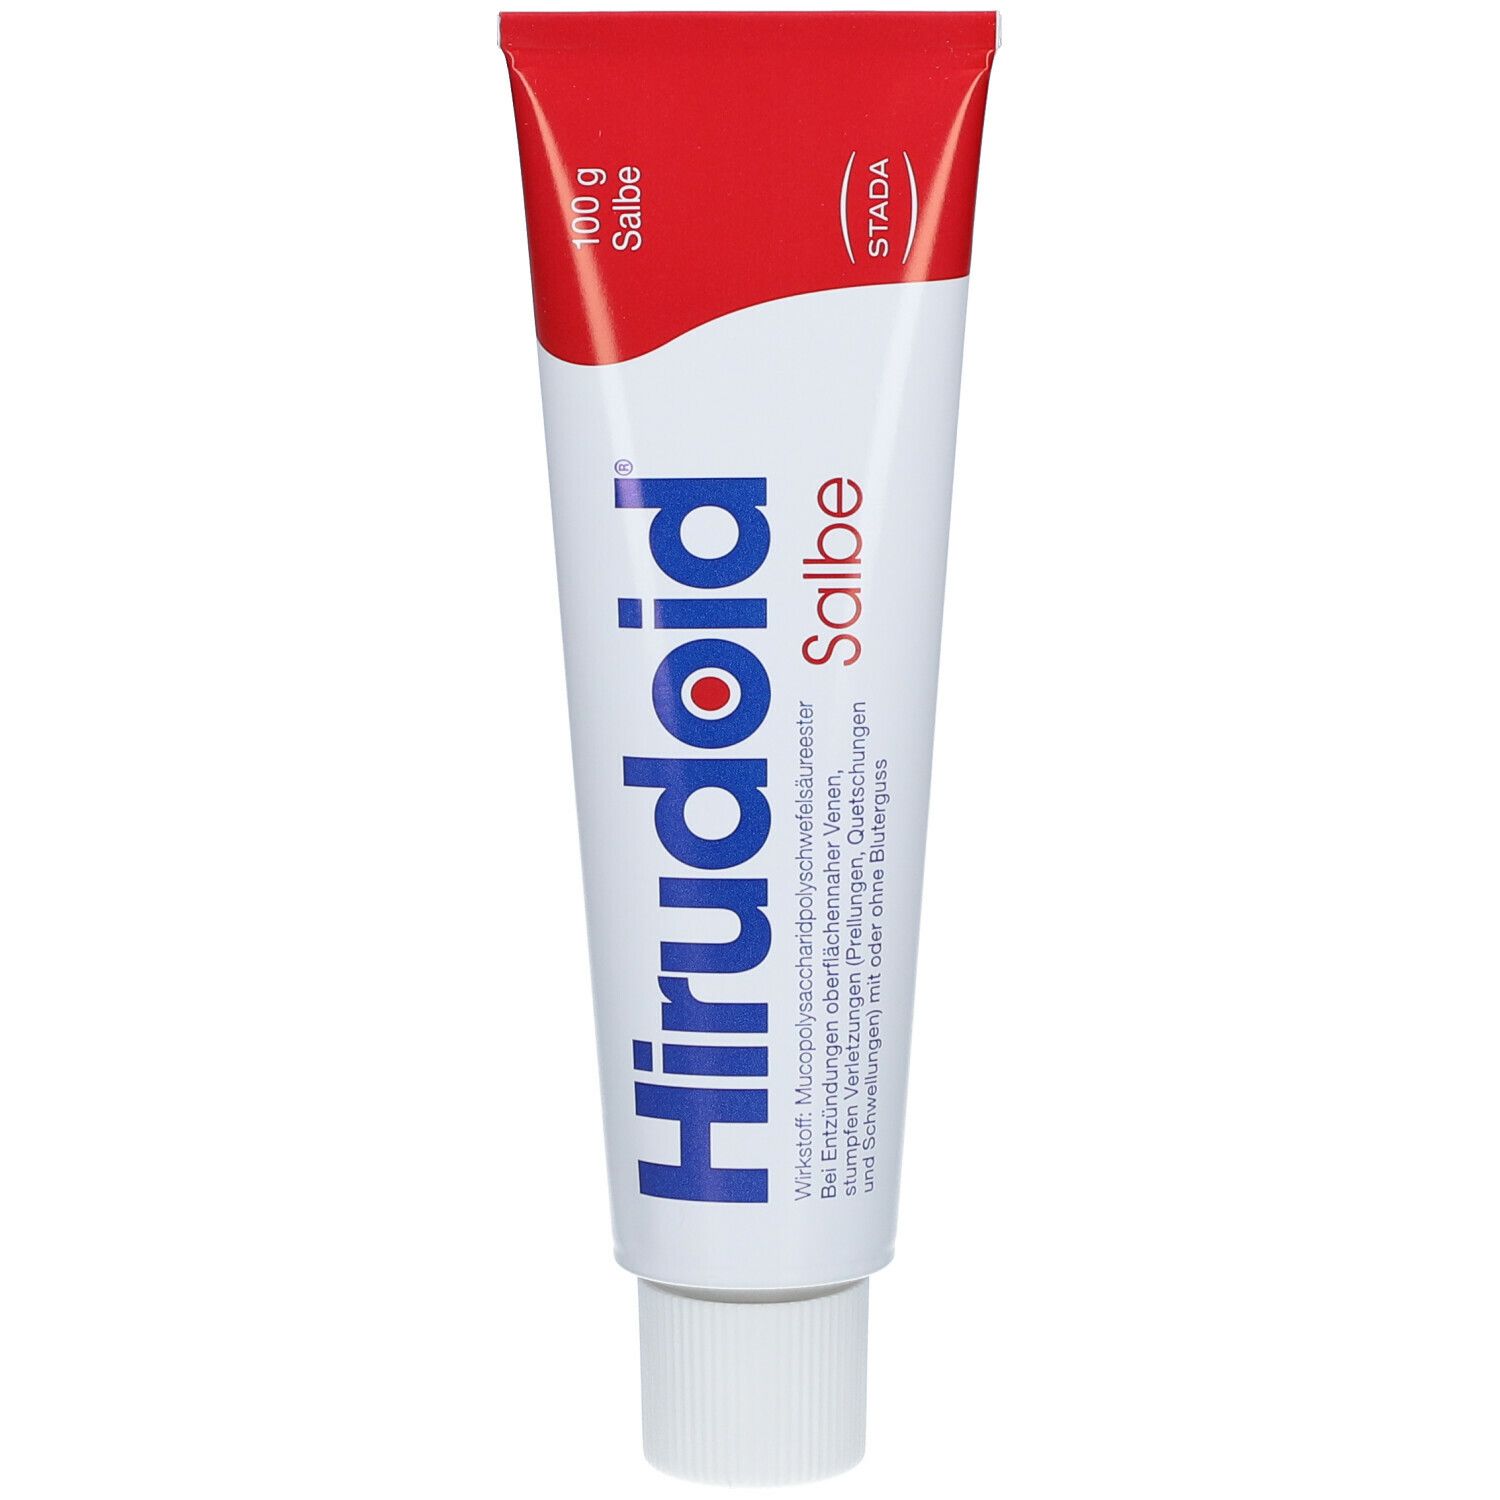 HIRUDOID® Salbe 300 mg / 100 g